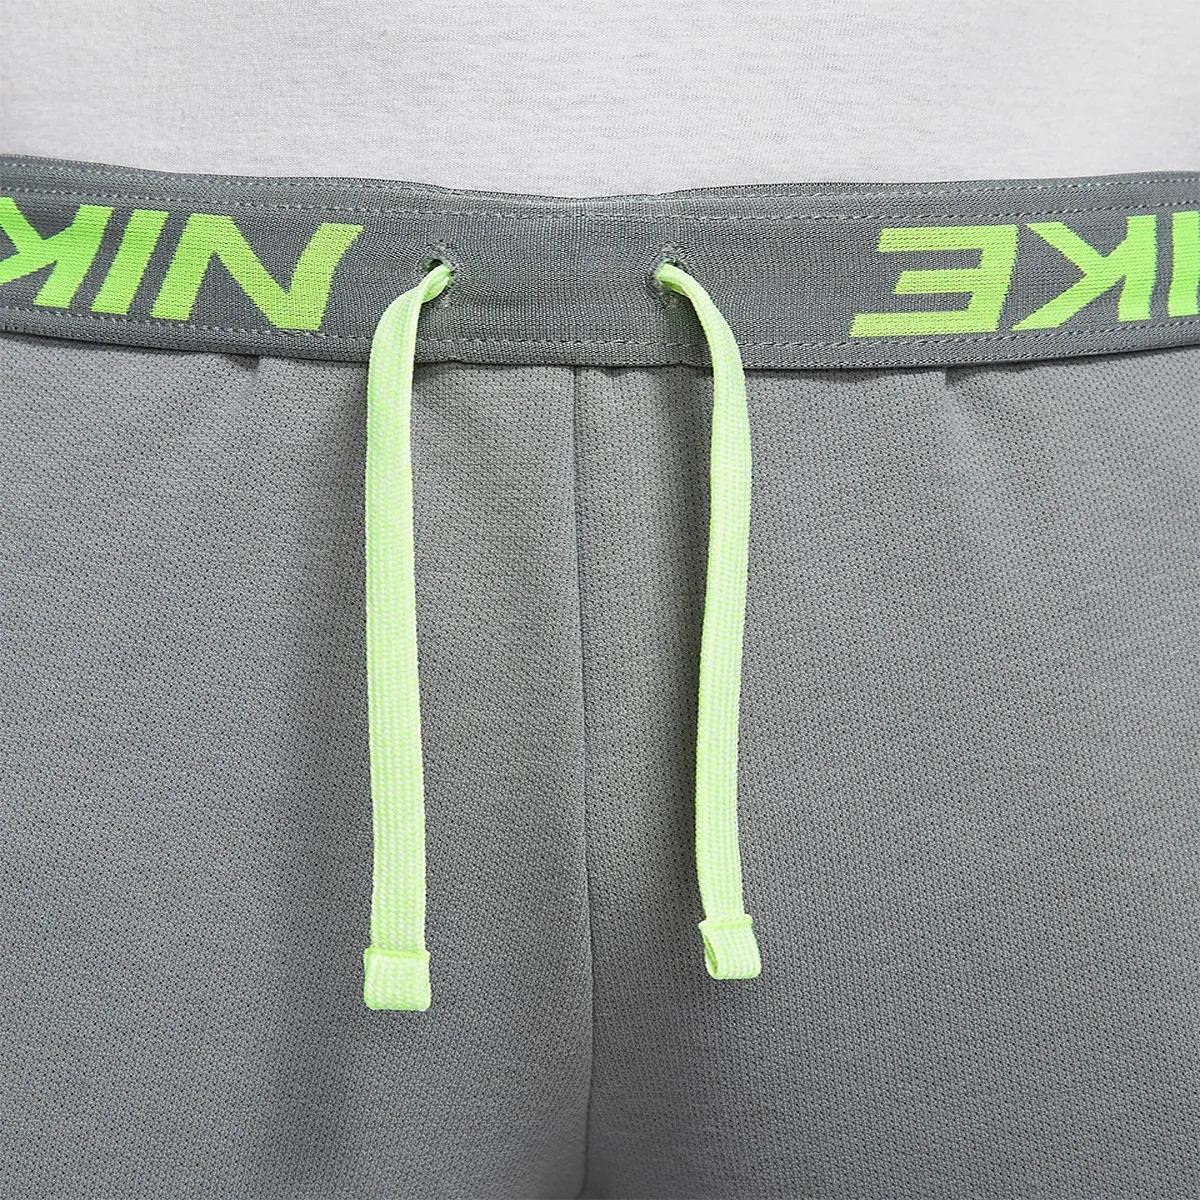 Nike Pantaloni de trening Therma-FIT 